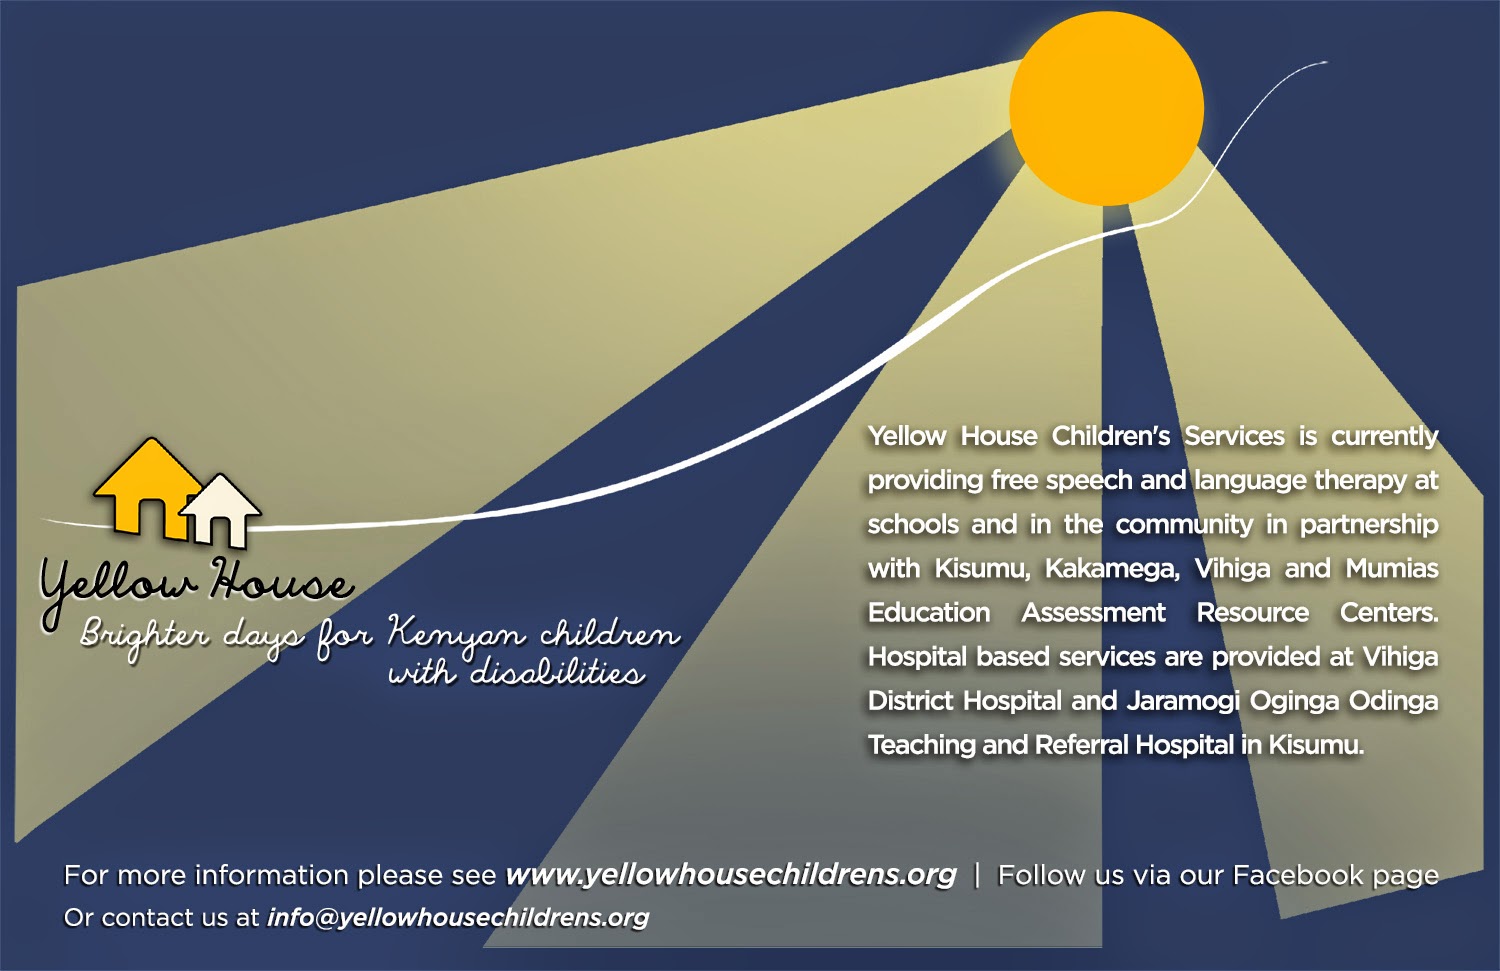 Yellow House Children's